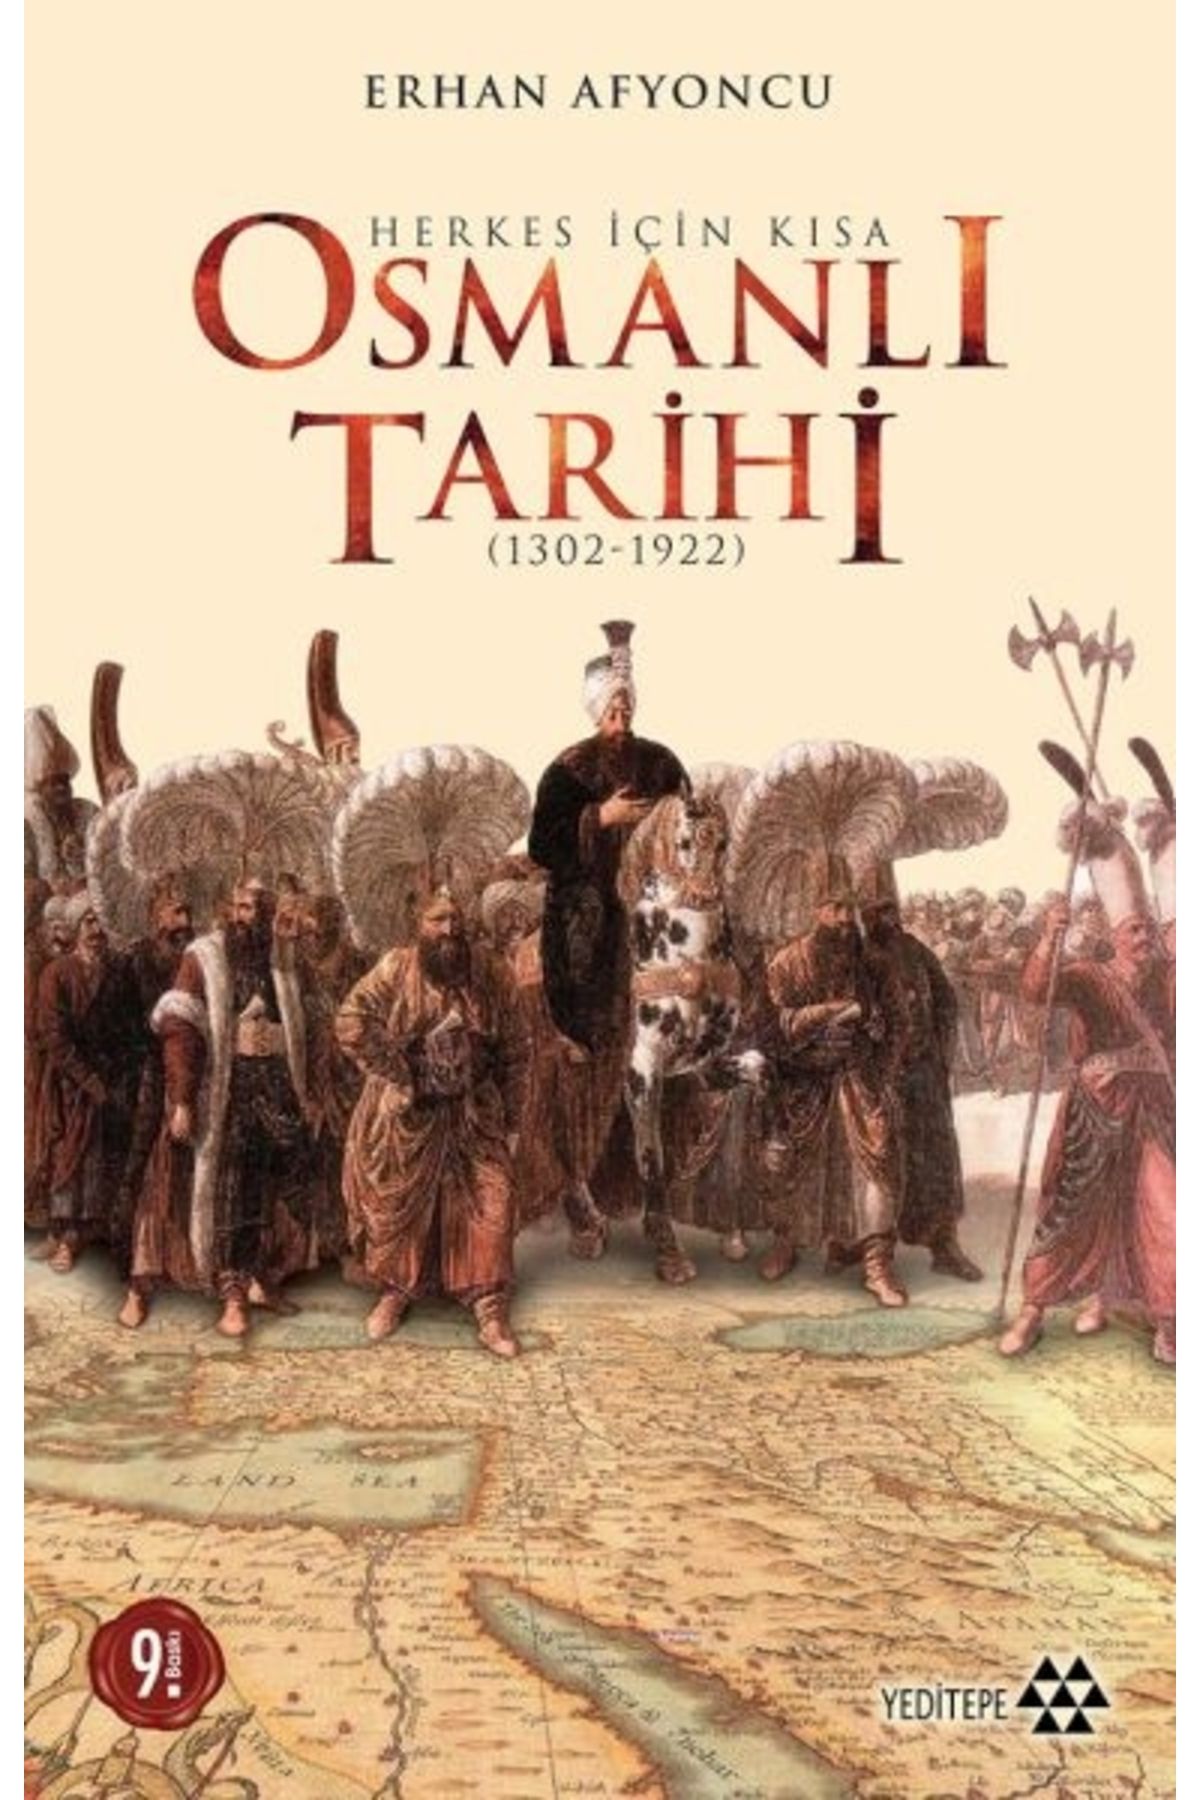 Yeditepe Yayınevi Herkes Için Kısa Osmanlı Tarihi